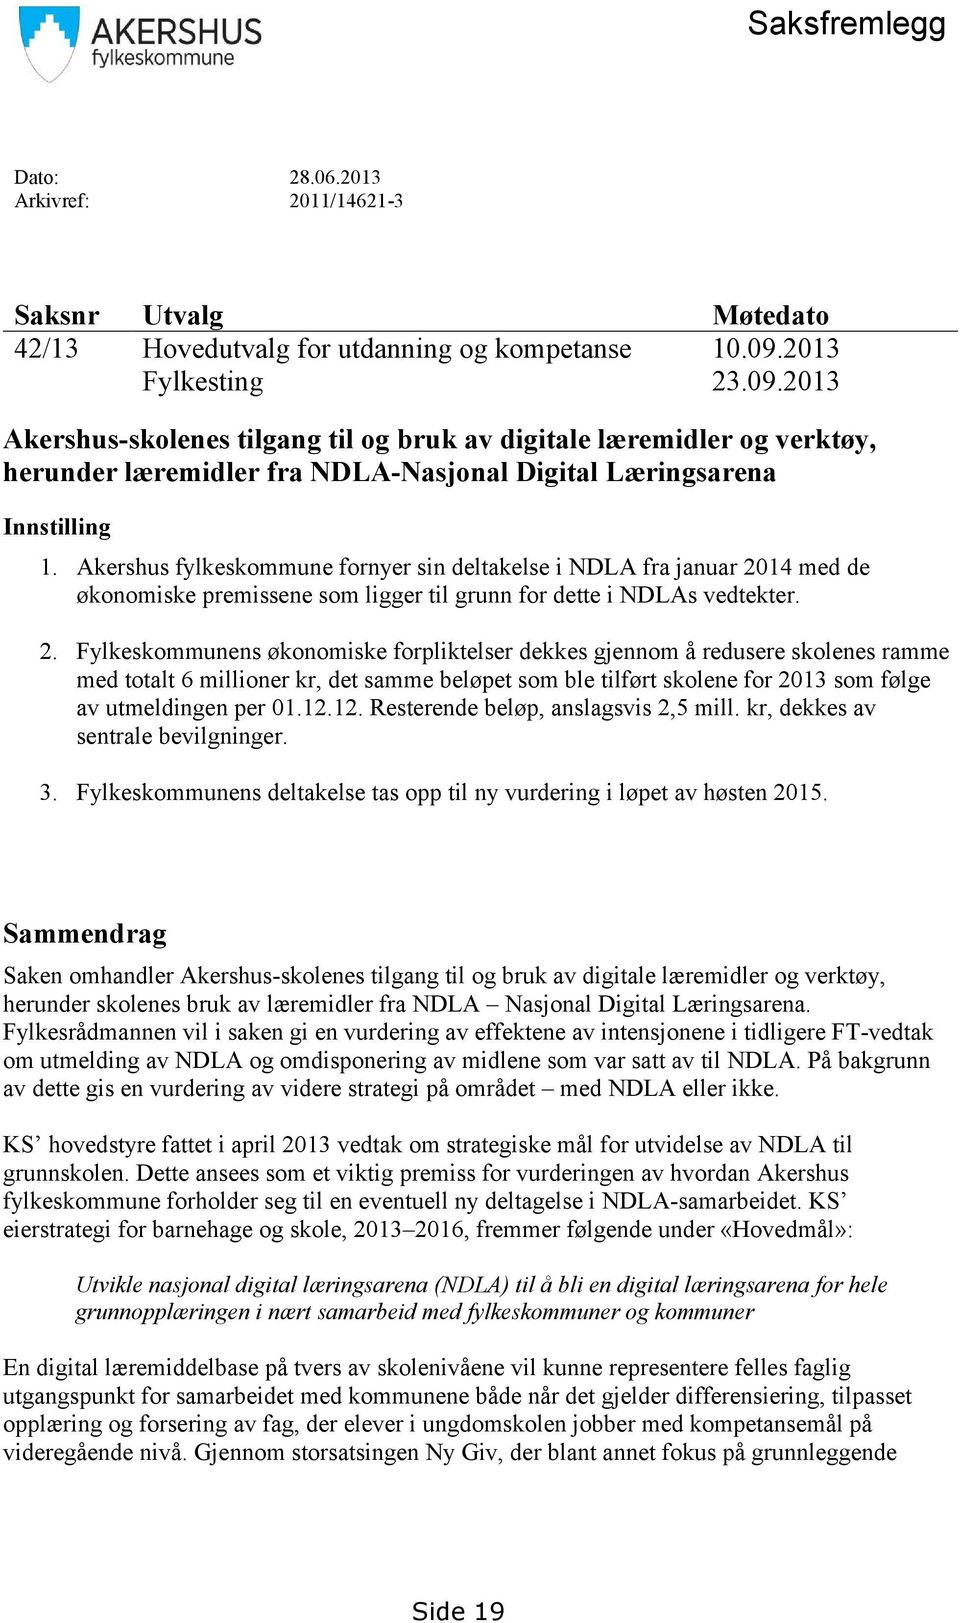 Akershus fylkeskommune fornyer sin deltakelse i NDLA fra januar 20